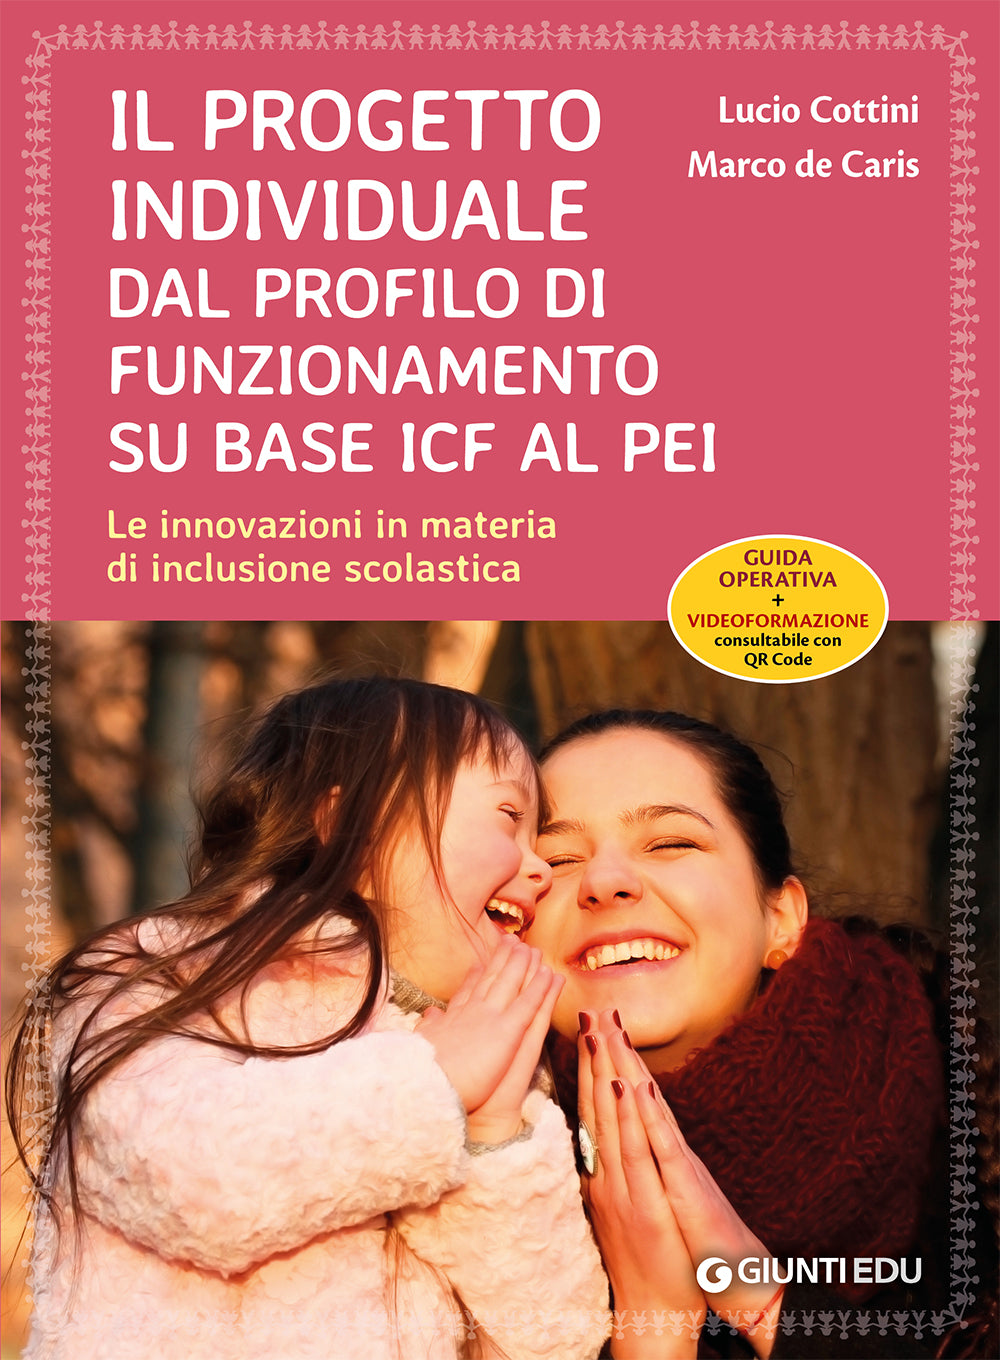 Il Progetto individuale dal profilo di funzionamento su base ICF al PEI::Le innovazioni in materia di inclusione scolastica